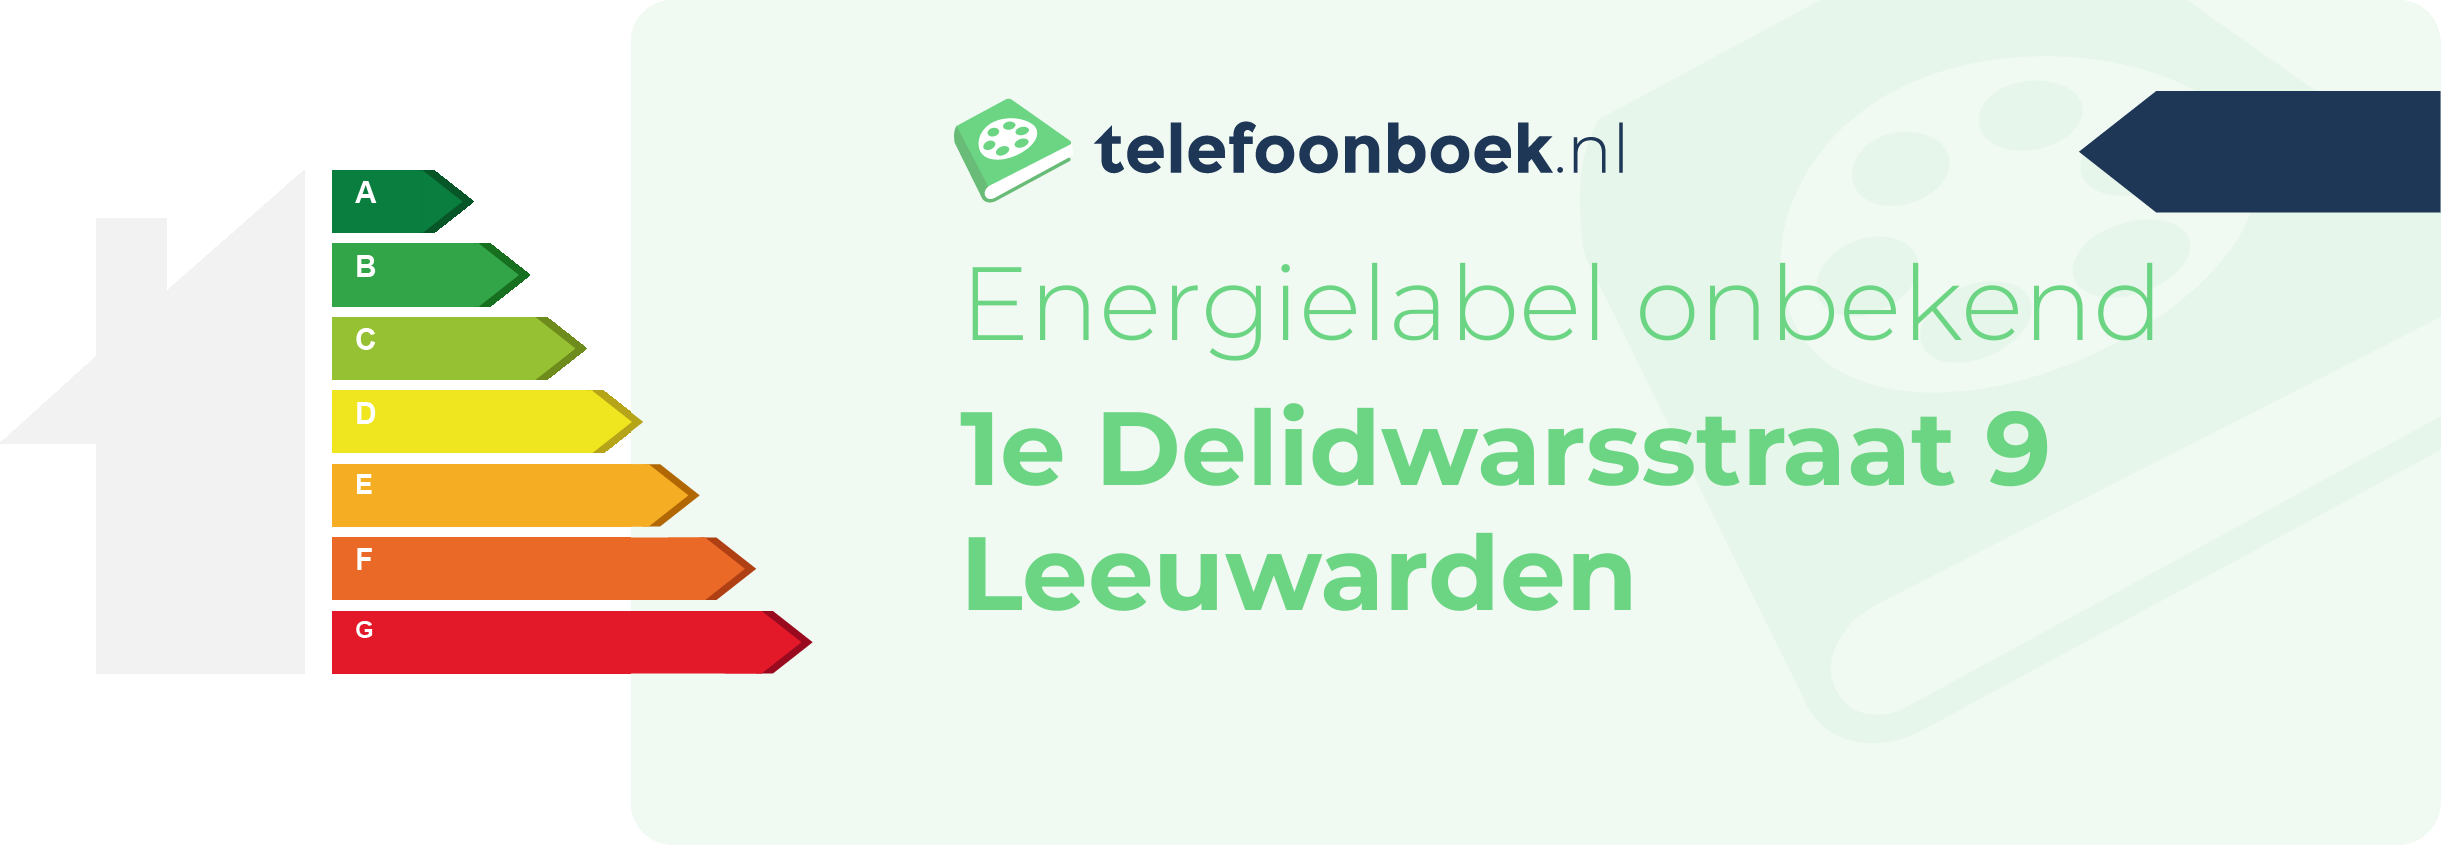 Energielabel 1e Delidwarsstraat 9 Leeuwarden